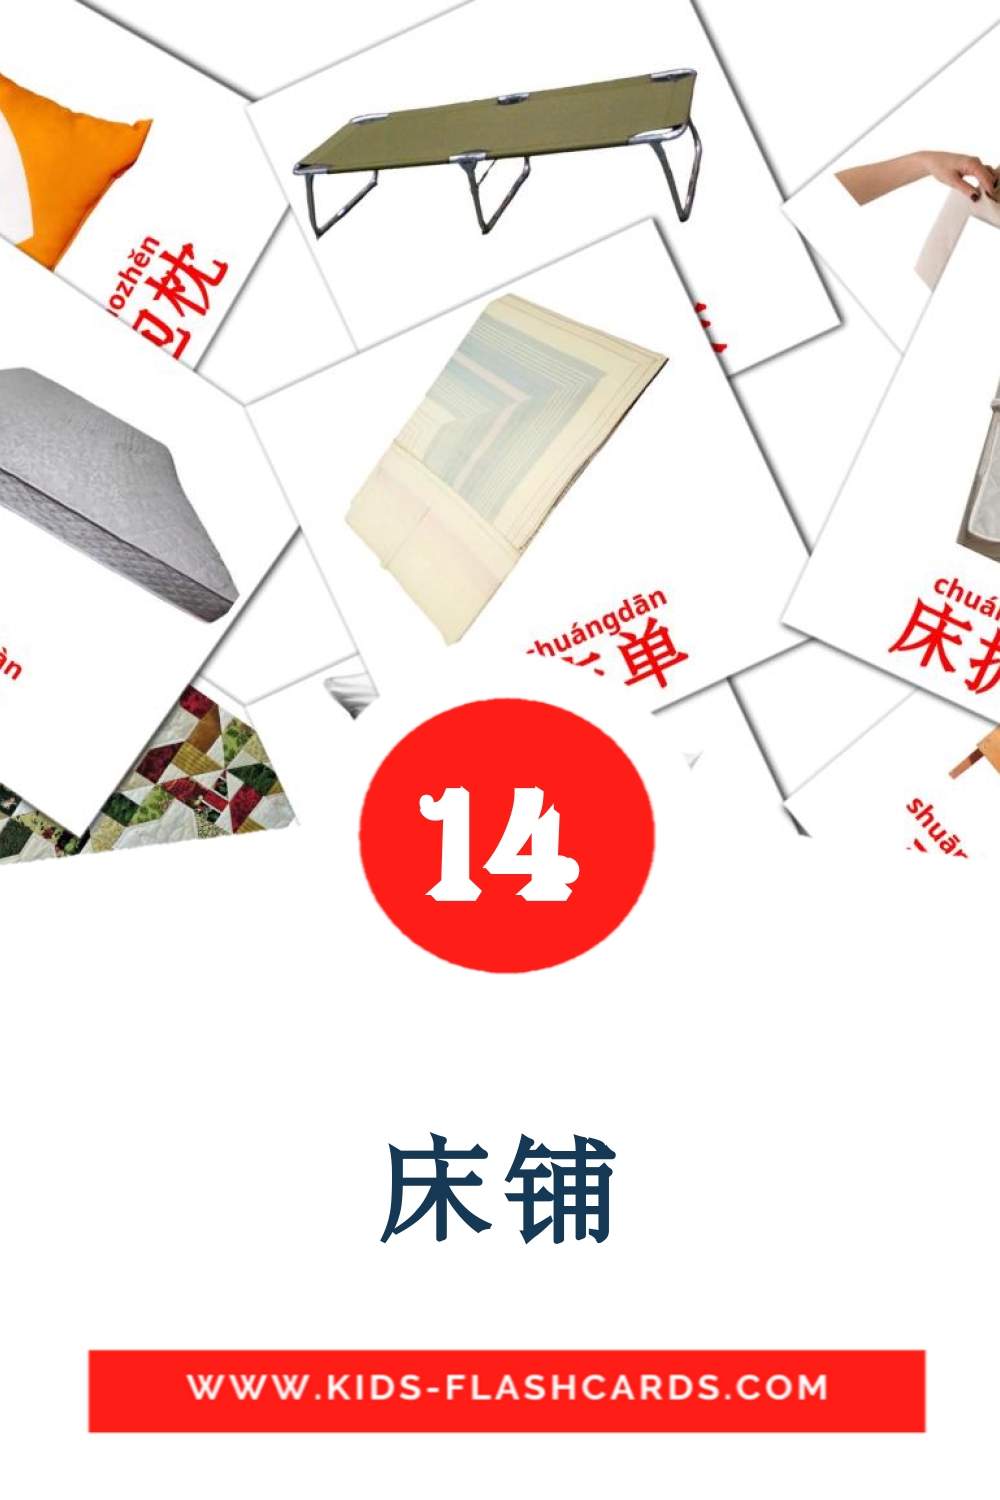 14 床铺 Bildkarten für den Kindergarten auf Chinesisch(Vereinfacht)